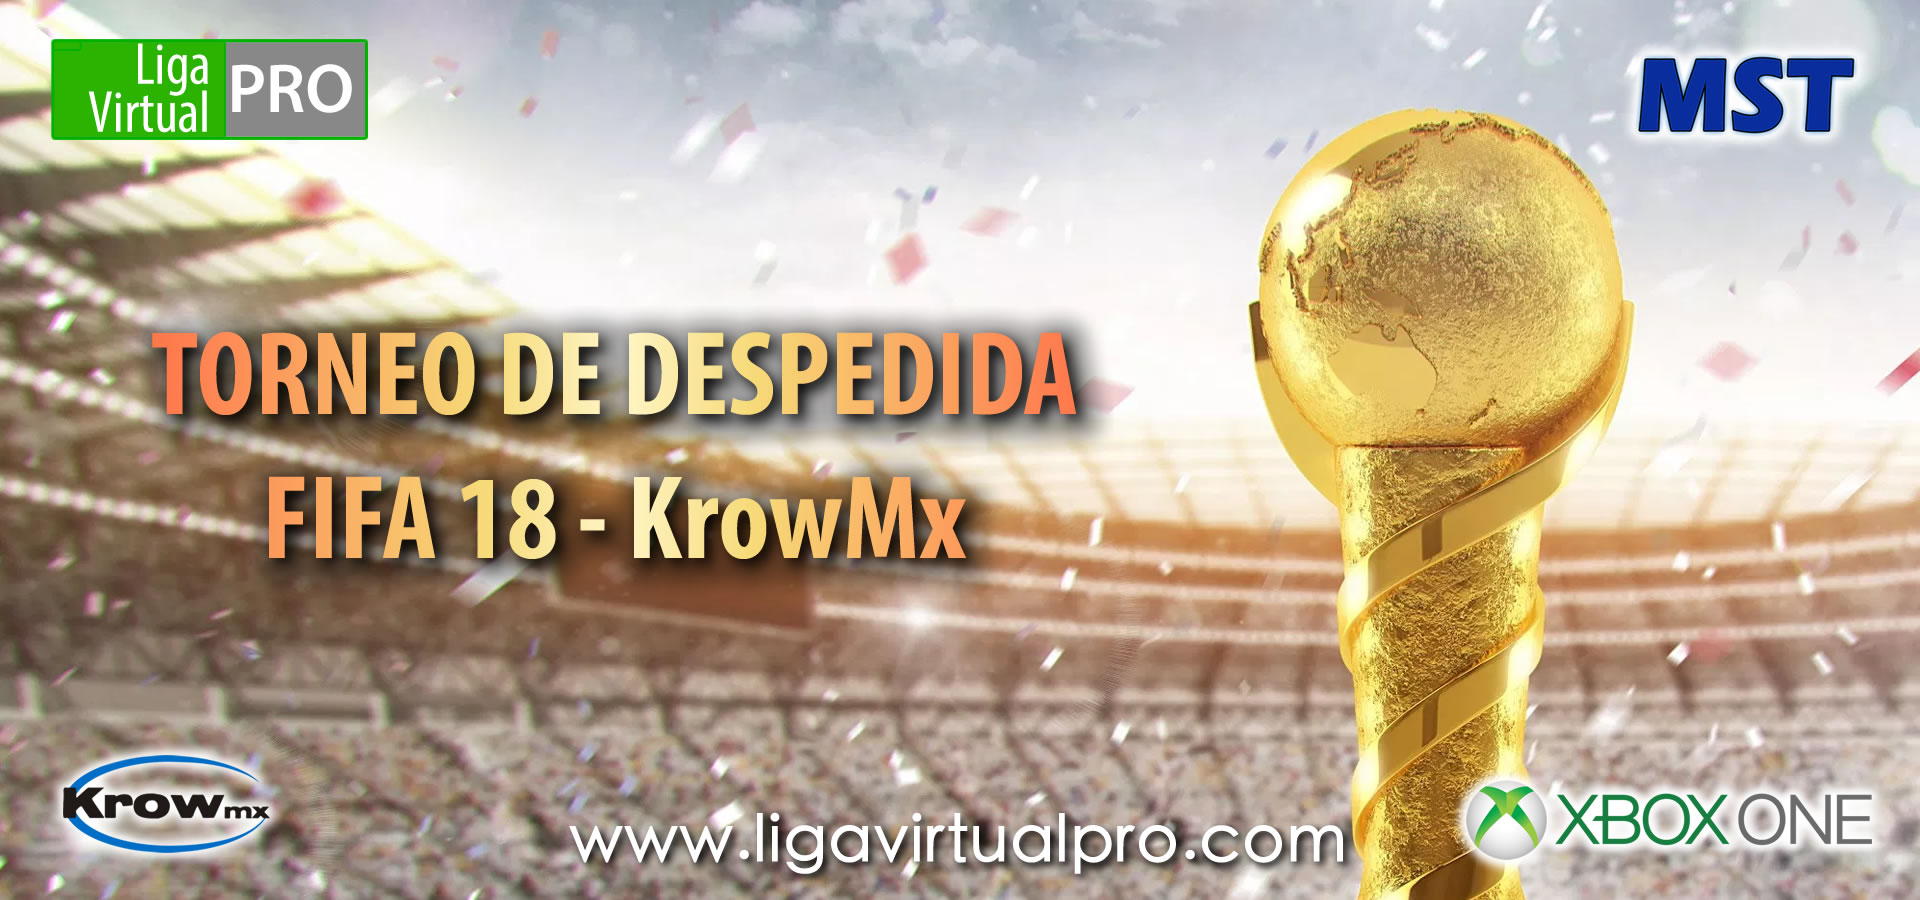 Logo-TORNEO DE DESPEDIDA FIFA 18 - KROWMX